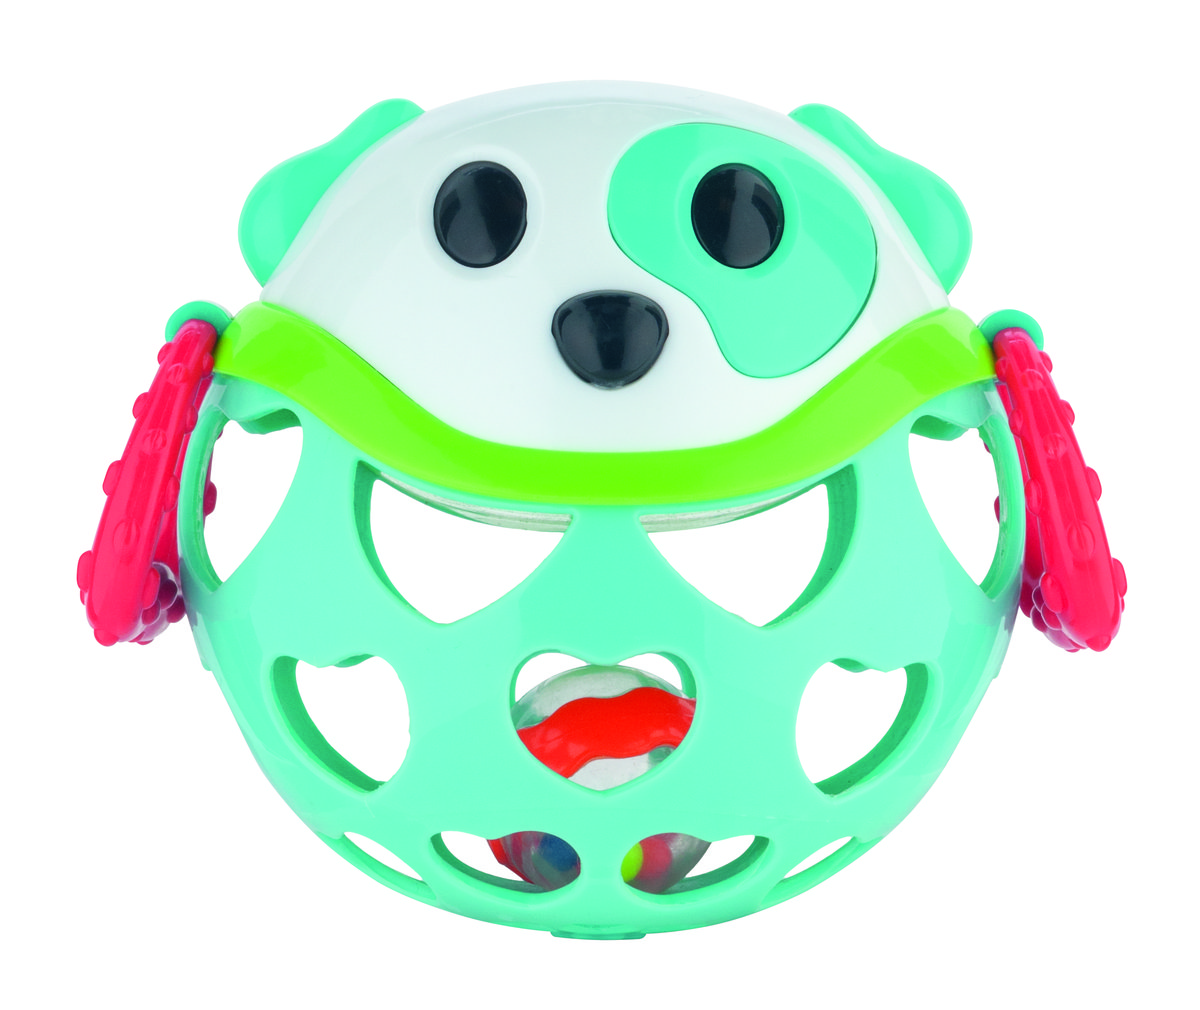 Фото - Розвивальна іграшка Canpol Babies , interaktywna zabawka z grzechotką Pies 